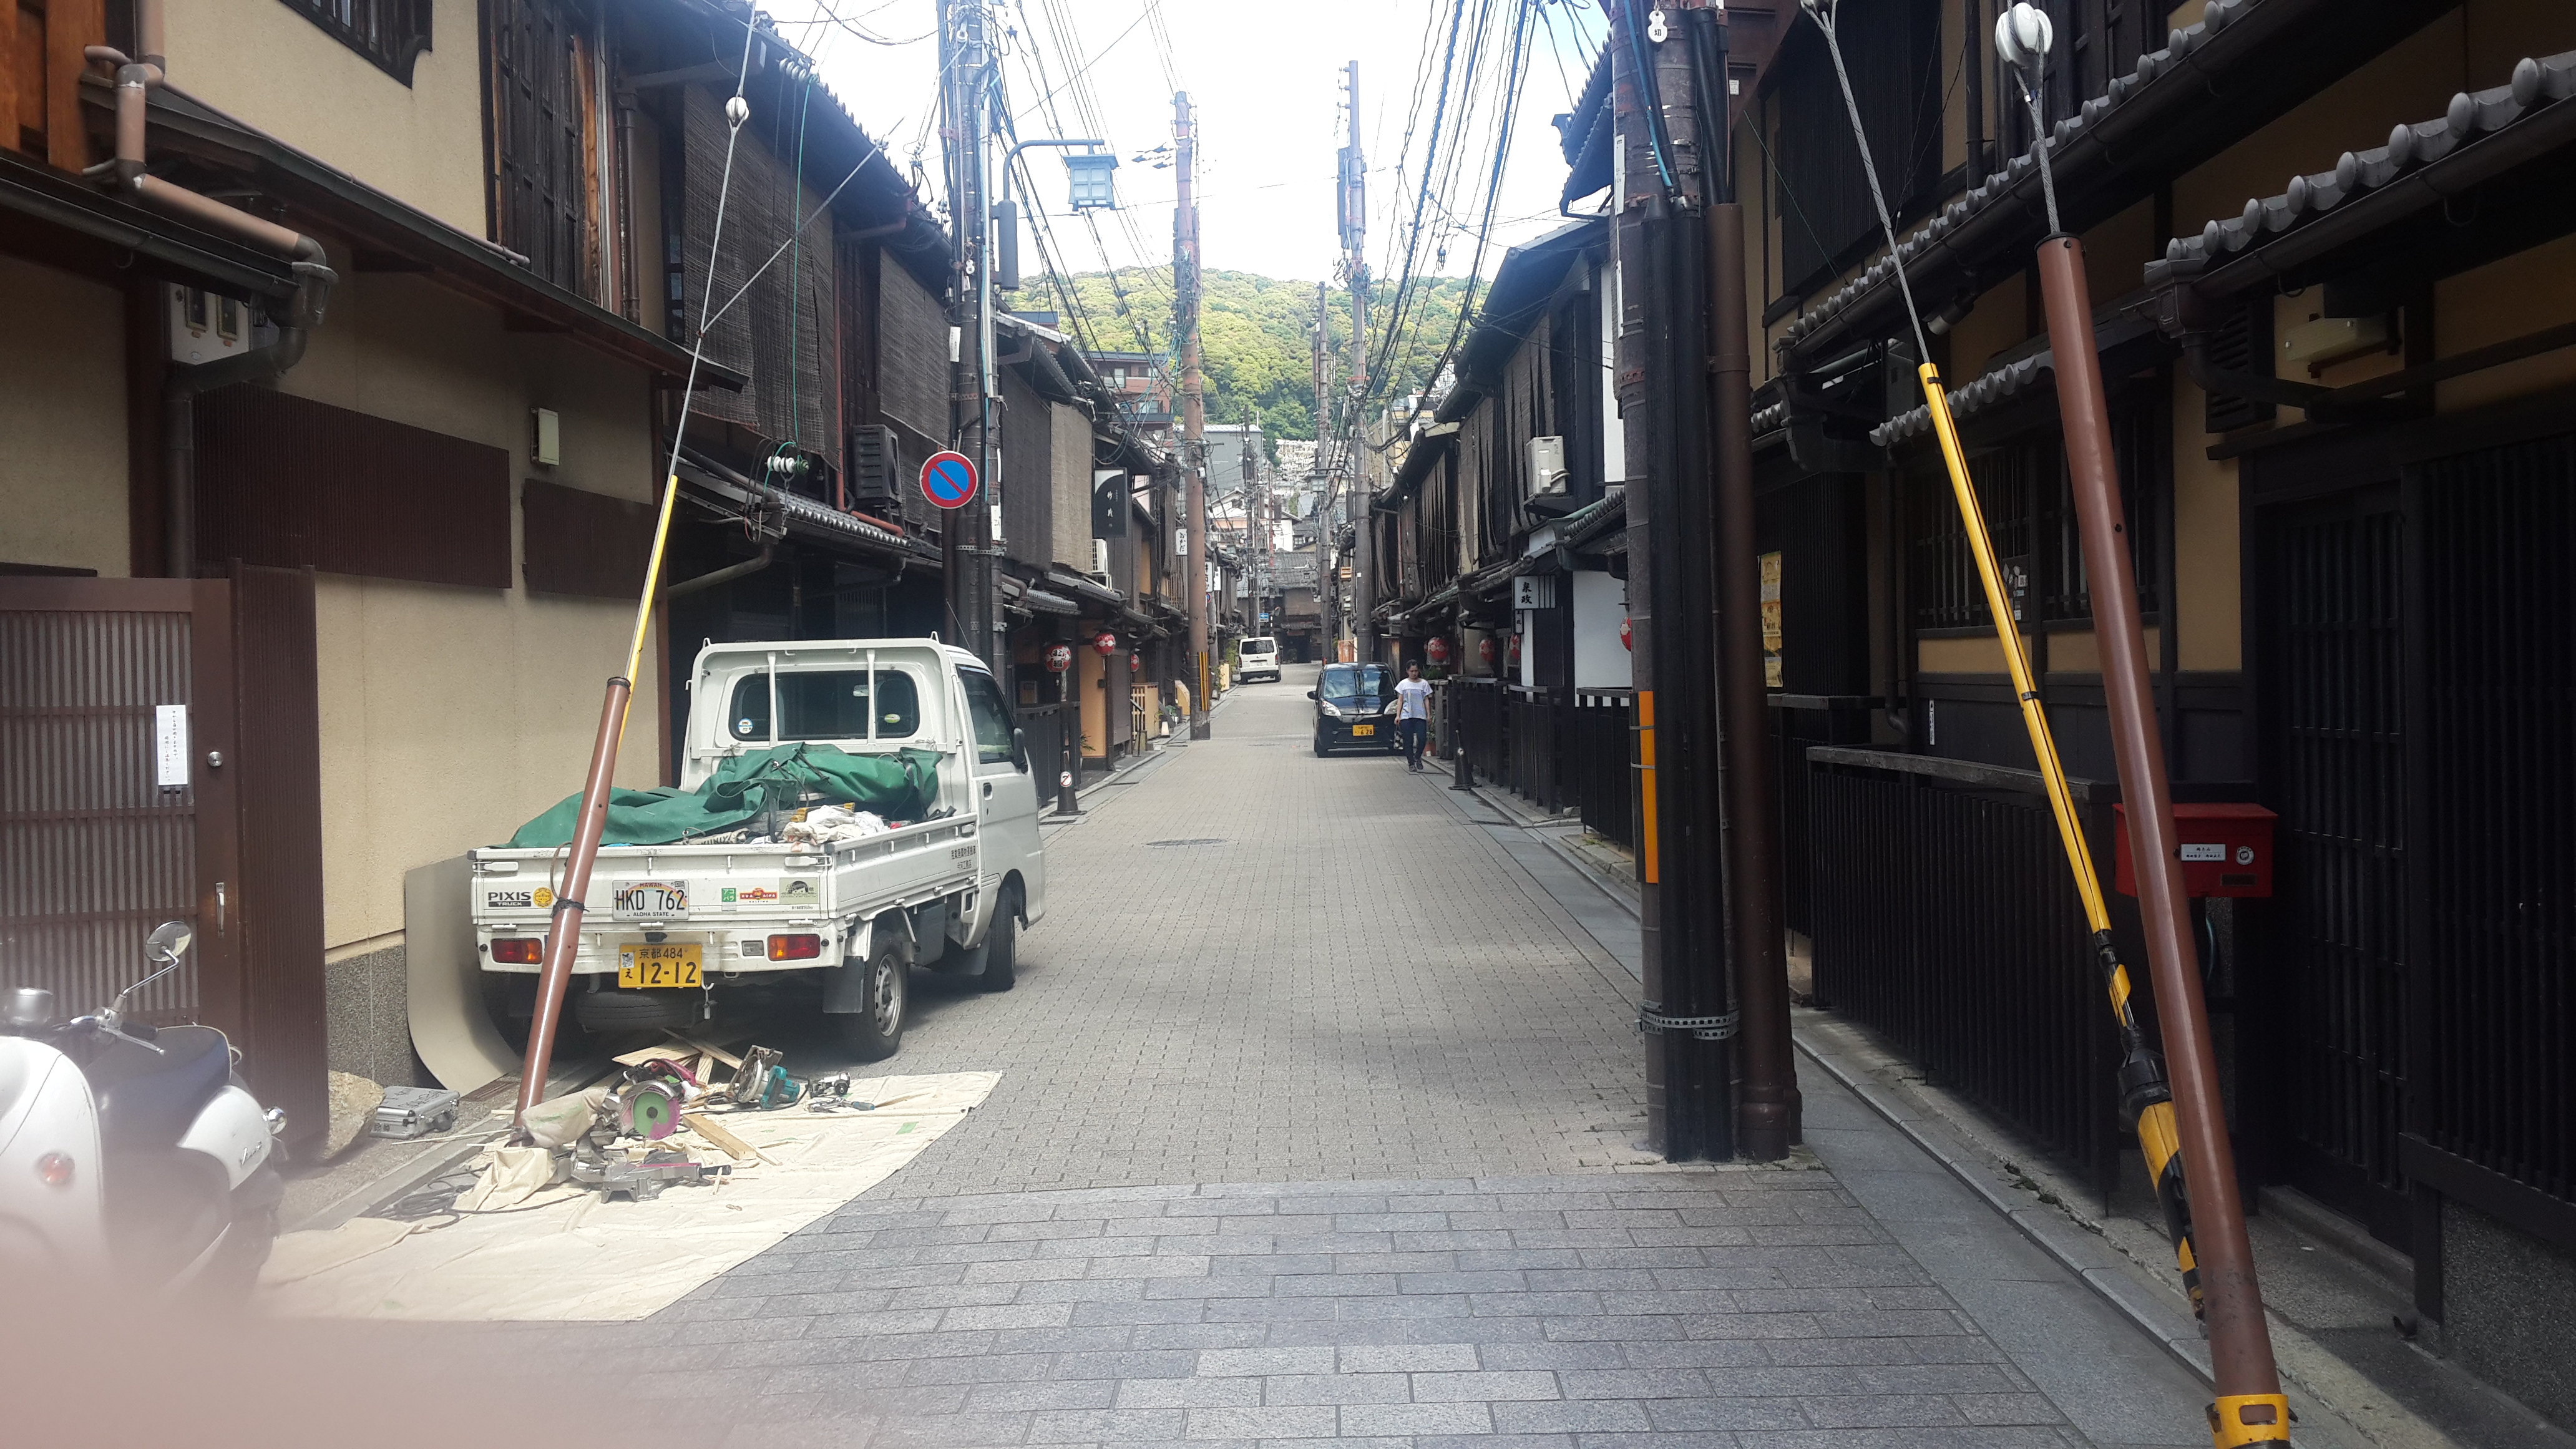 这条路日本名四条通,这里的店铺门前有着连廊,有别于其他街道